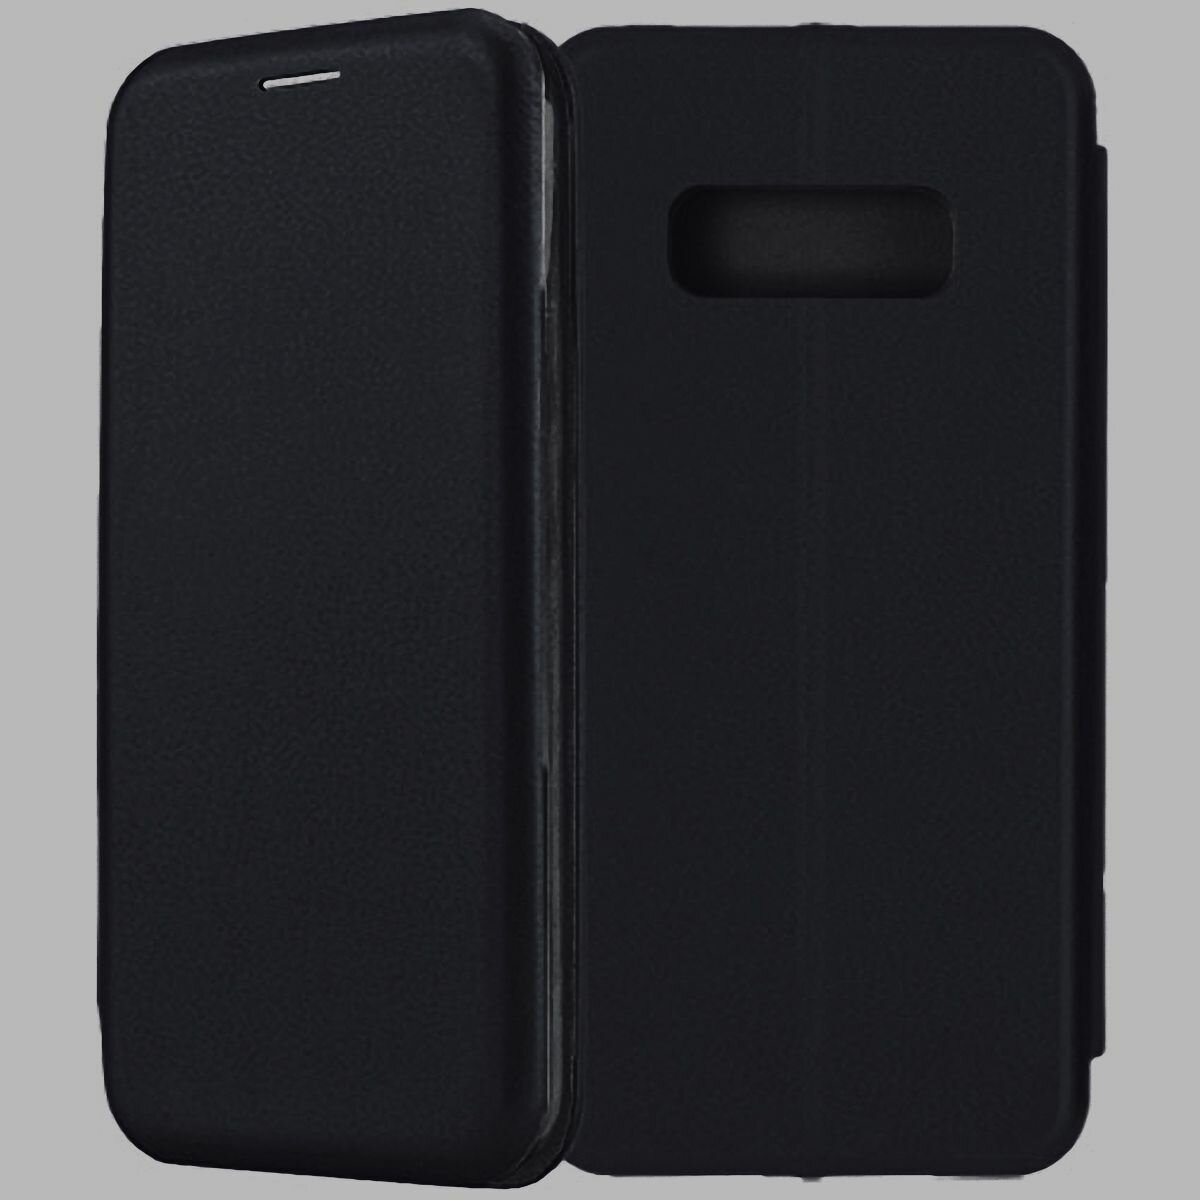 Samsung Galaxy S10E черный чехол-книжка эко-кожа для самсунг галакси с10е книга с функцией подставки на магните